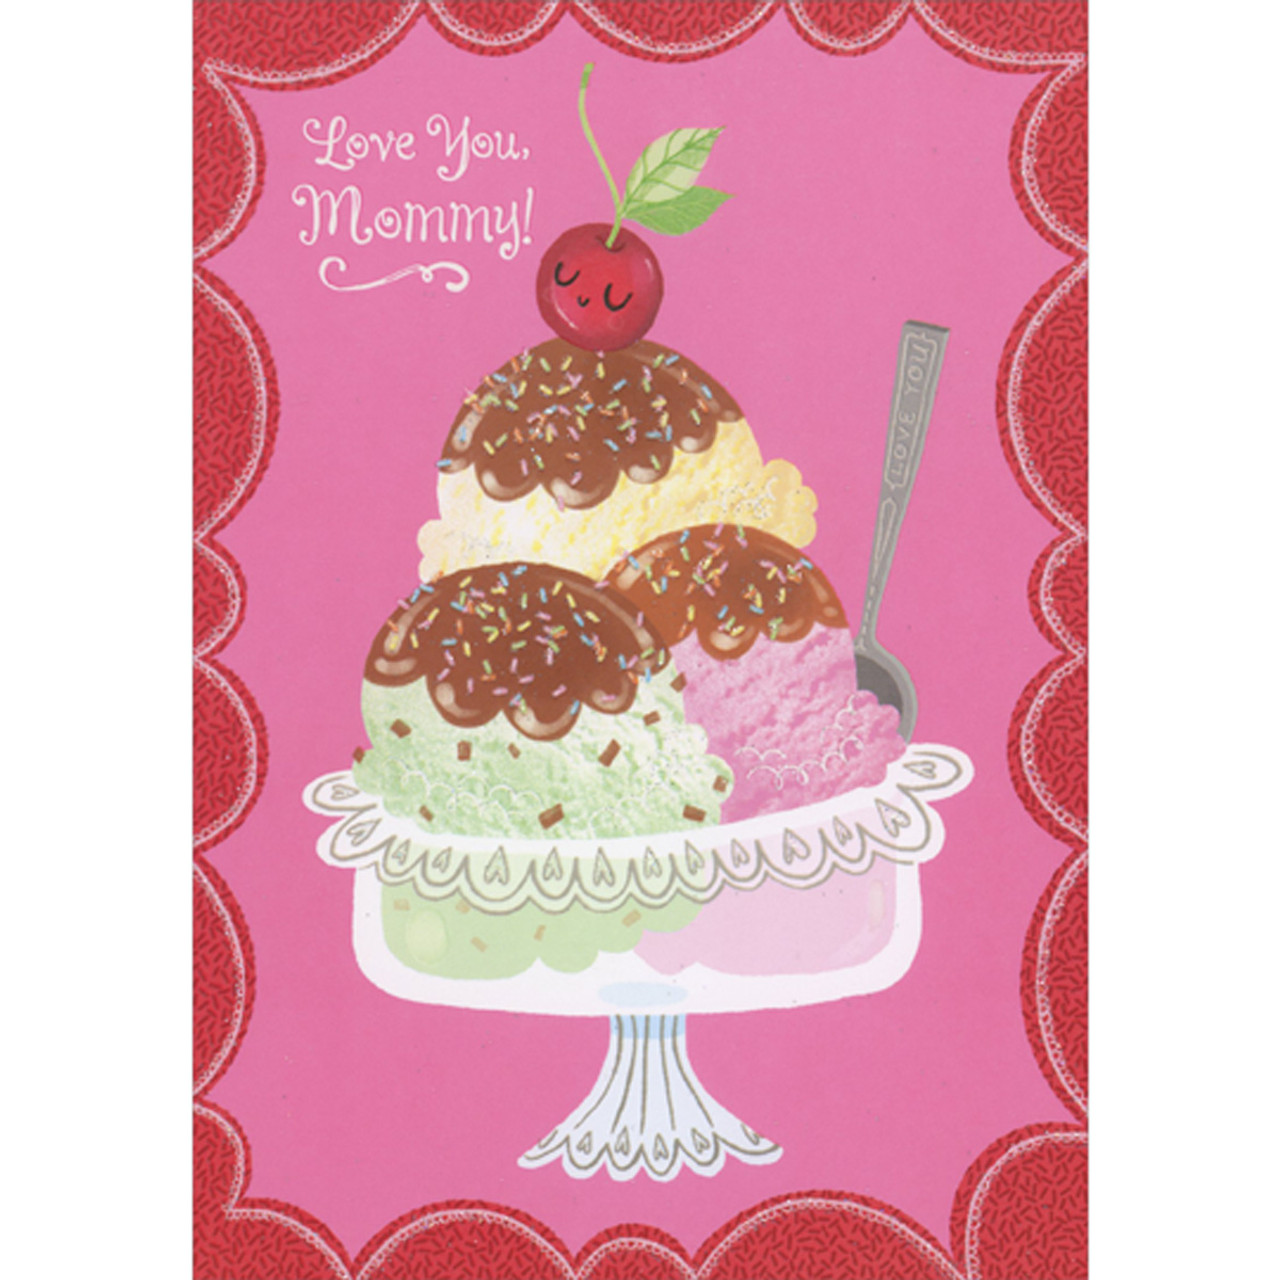 Ice Cream Sundae Birthday Gift Idea with Printable Birthday Card